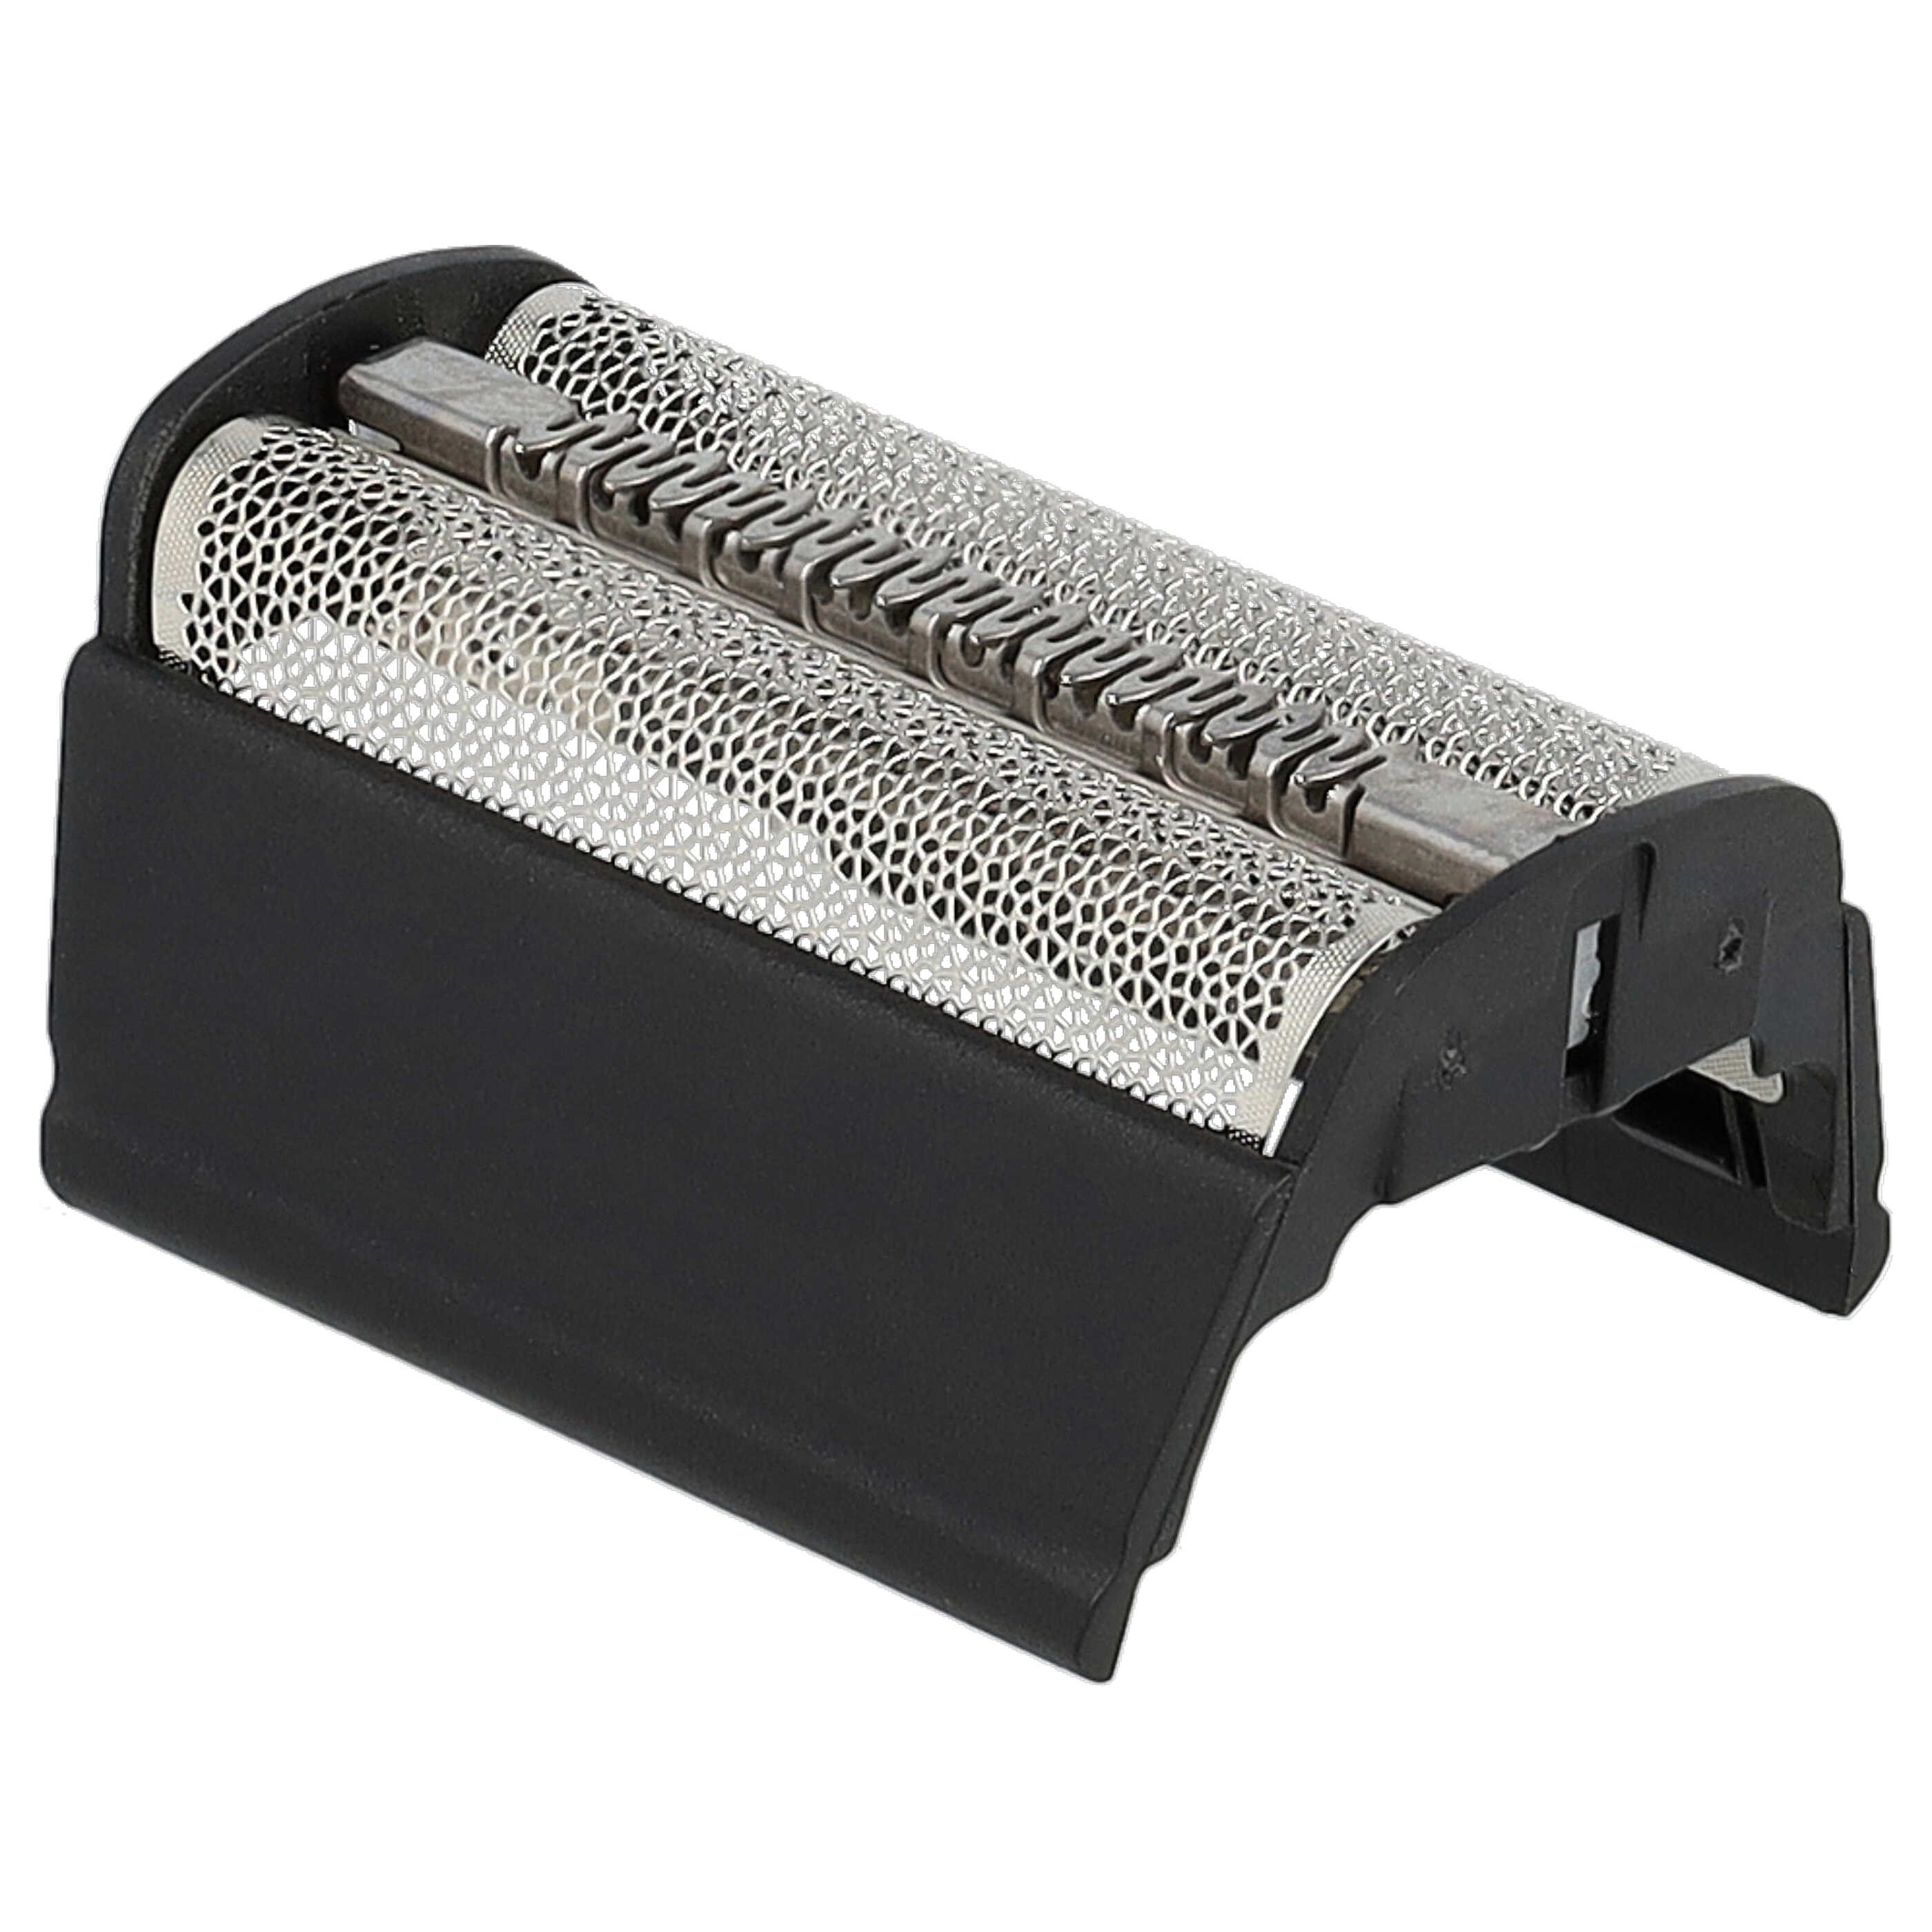 Combipack remplace Braun SB505, 31B pour rasoir Braun - grille + couteaux, noir